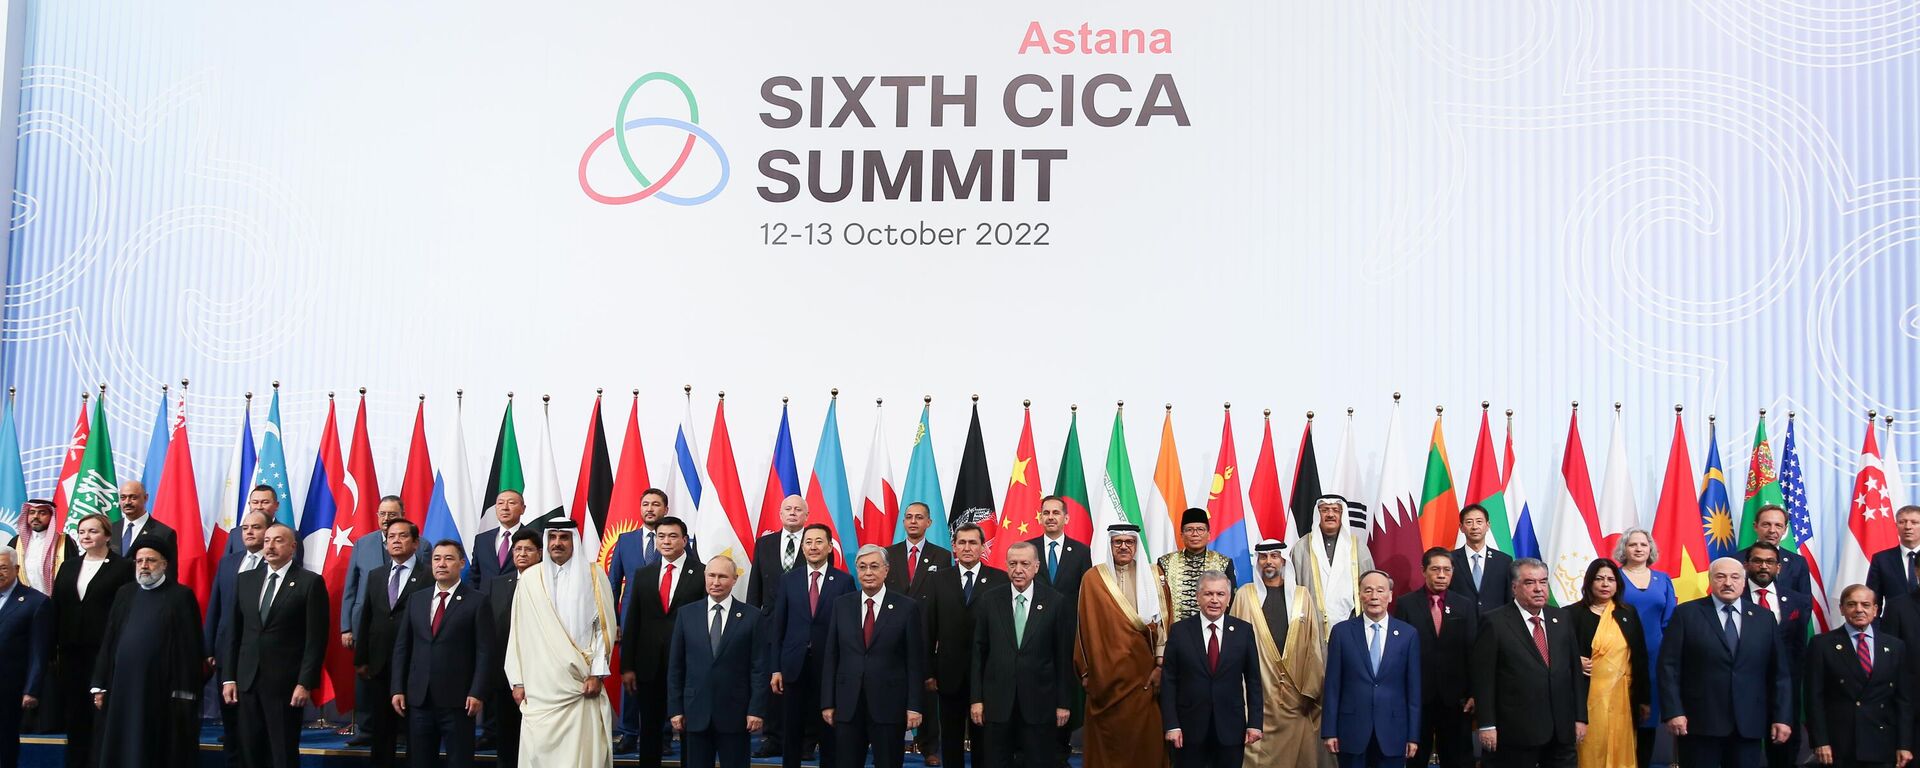 Hội nghị về Phối hợp hành động và các biện pháp xây dựng lòng tin ở châu Á (CICA) tại Astana - Sputnik Việt Nam, 1920, 13.10.2022